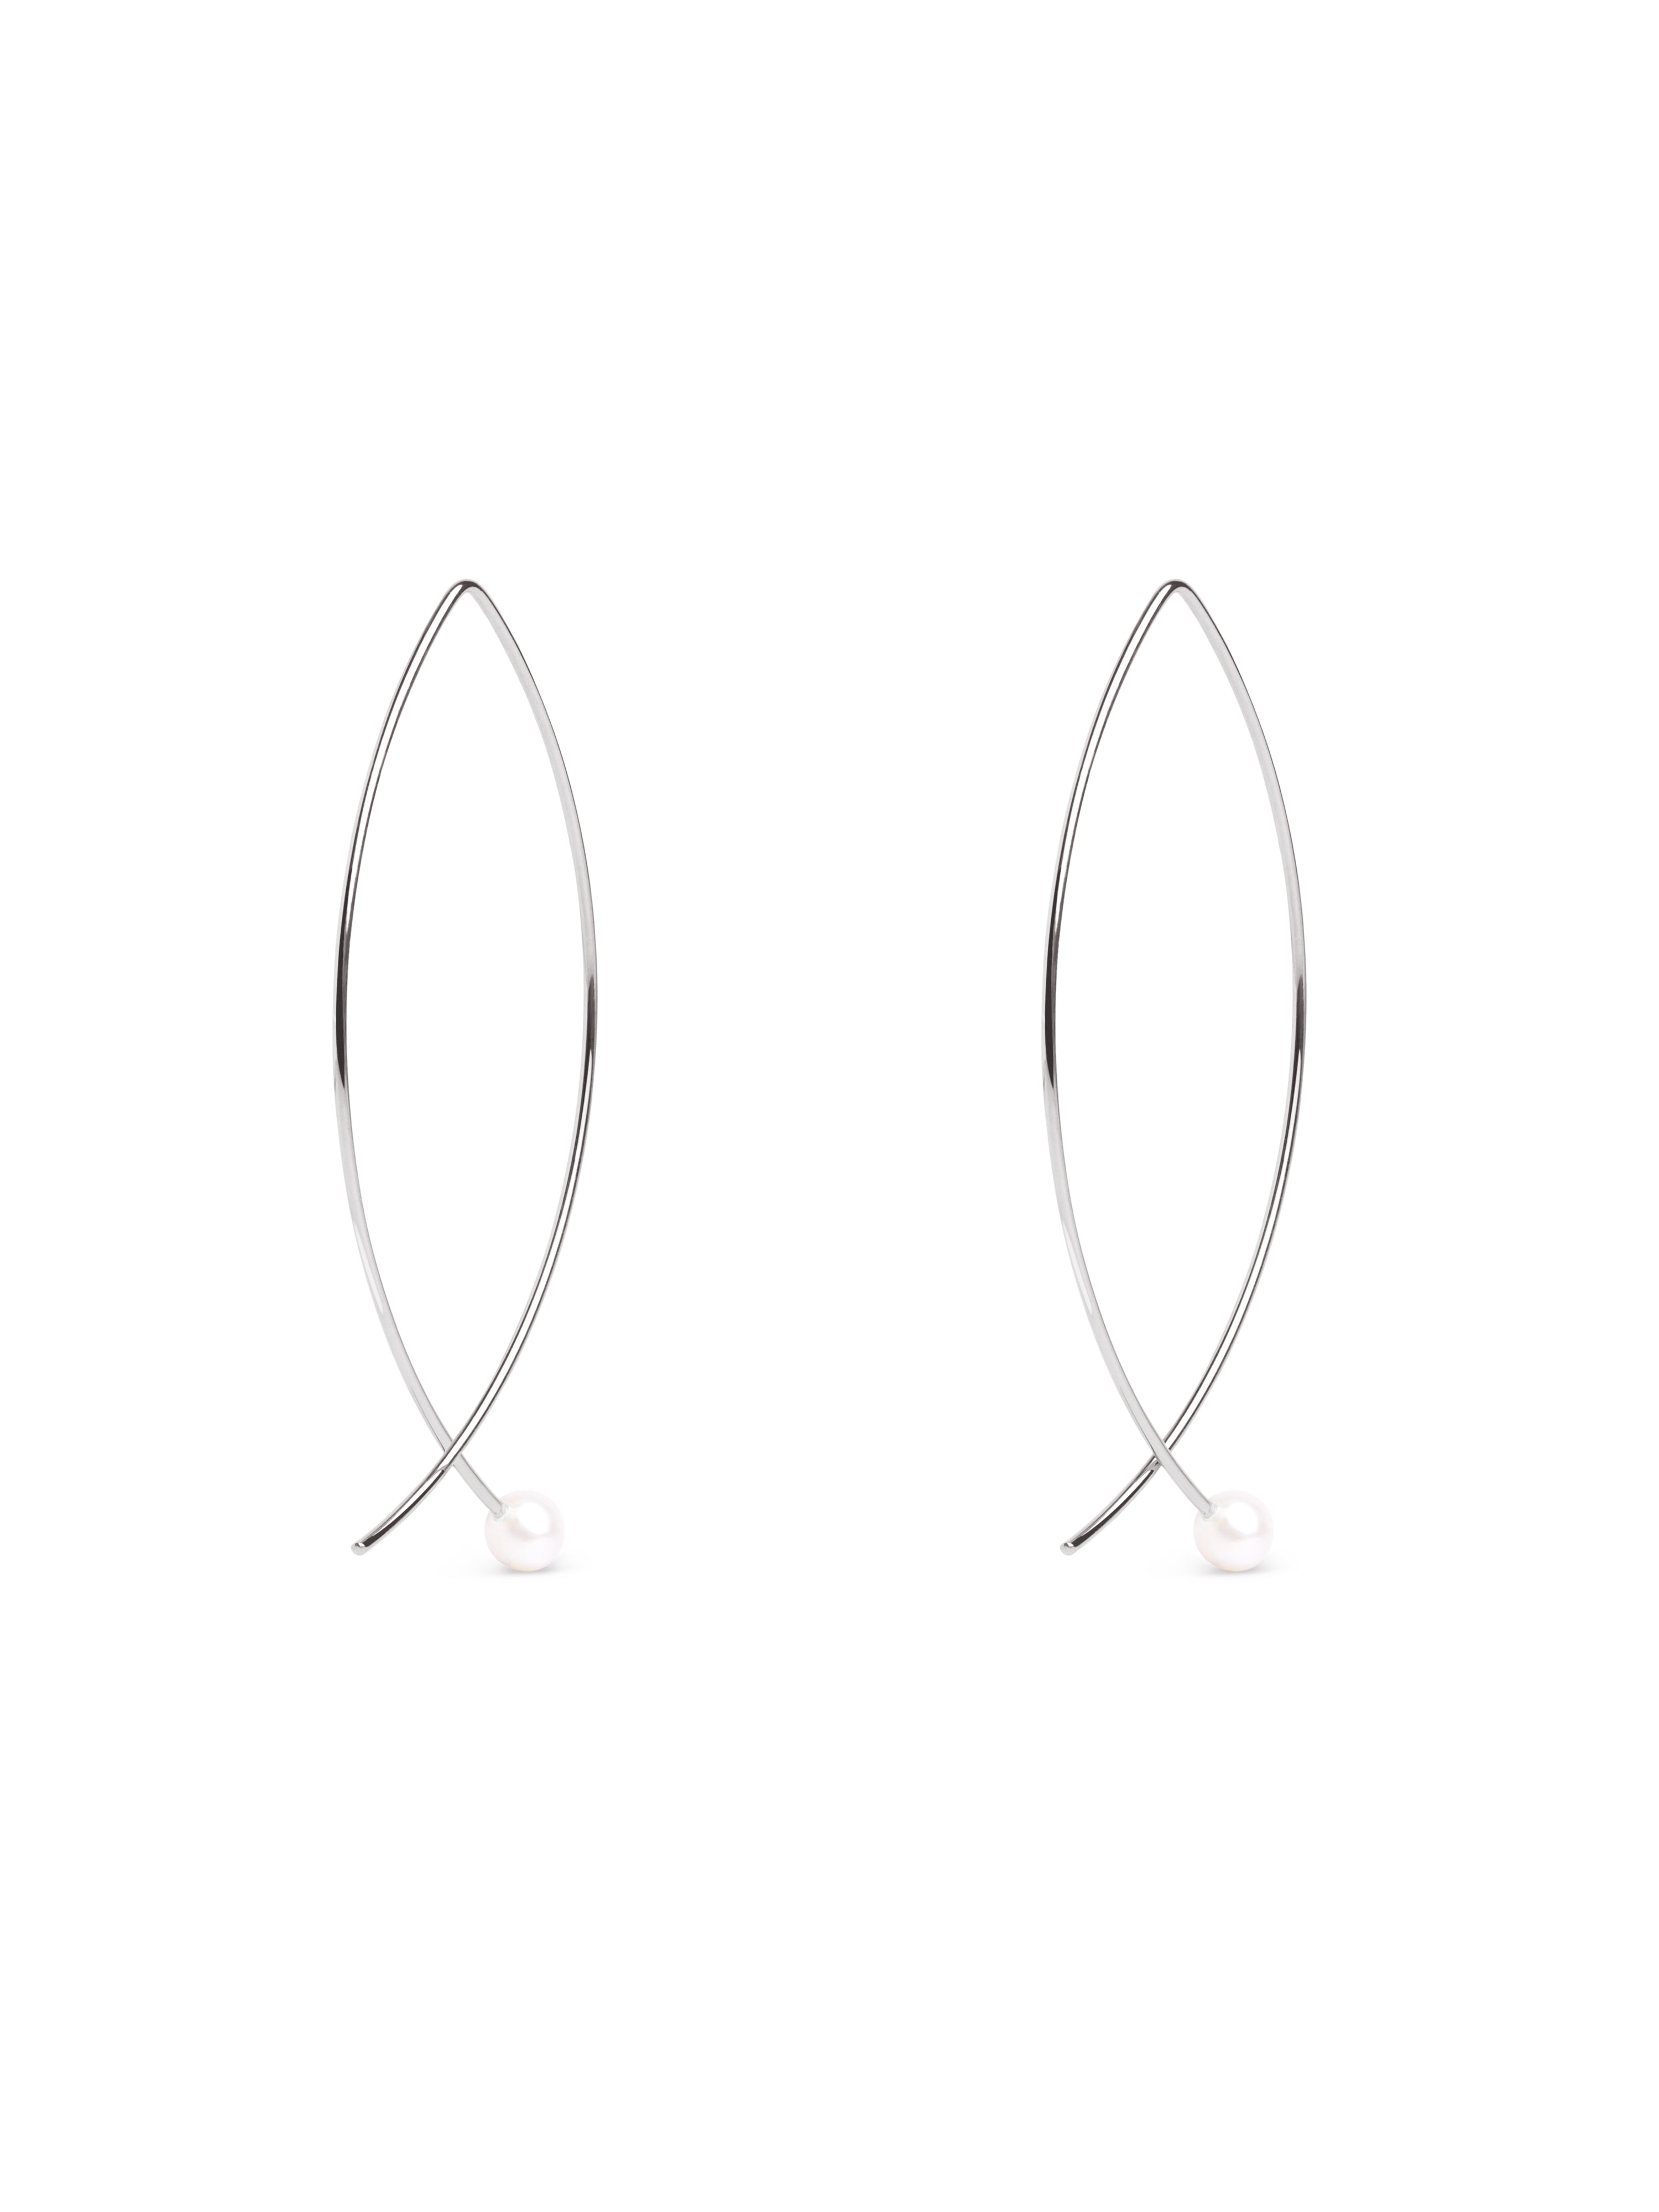 Arch Pearl Silver Earrings